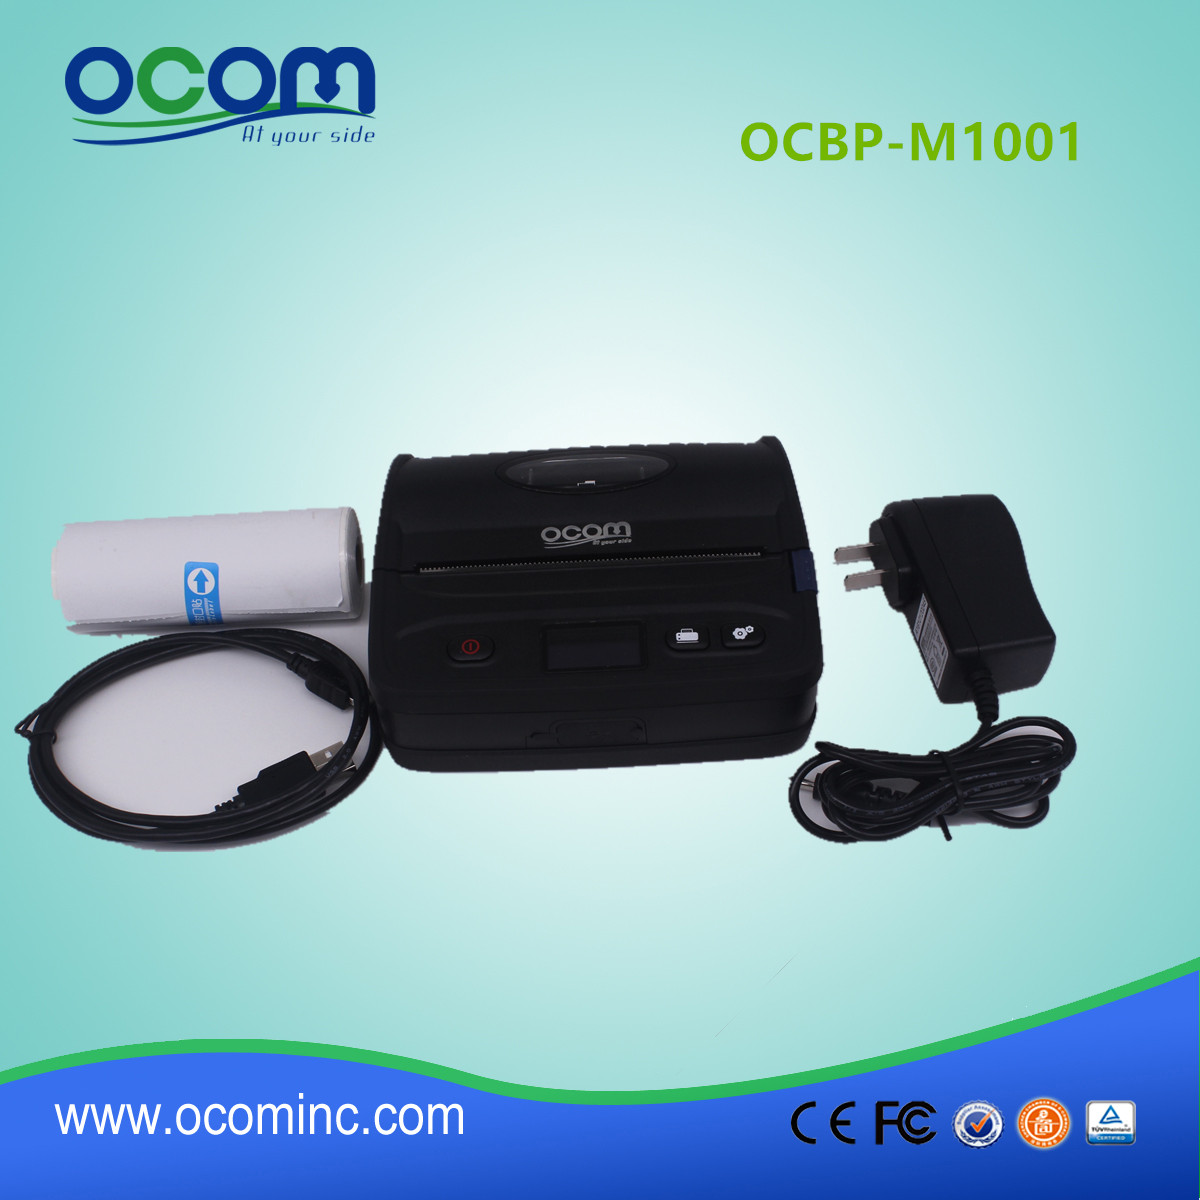 108mm Portbale kreskowych drukarki etykiet z Bluetooth (OCBP-M1001)